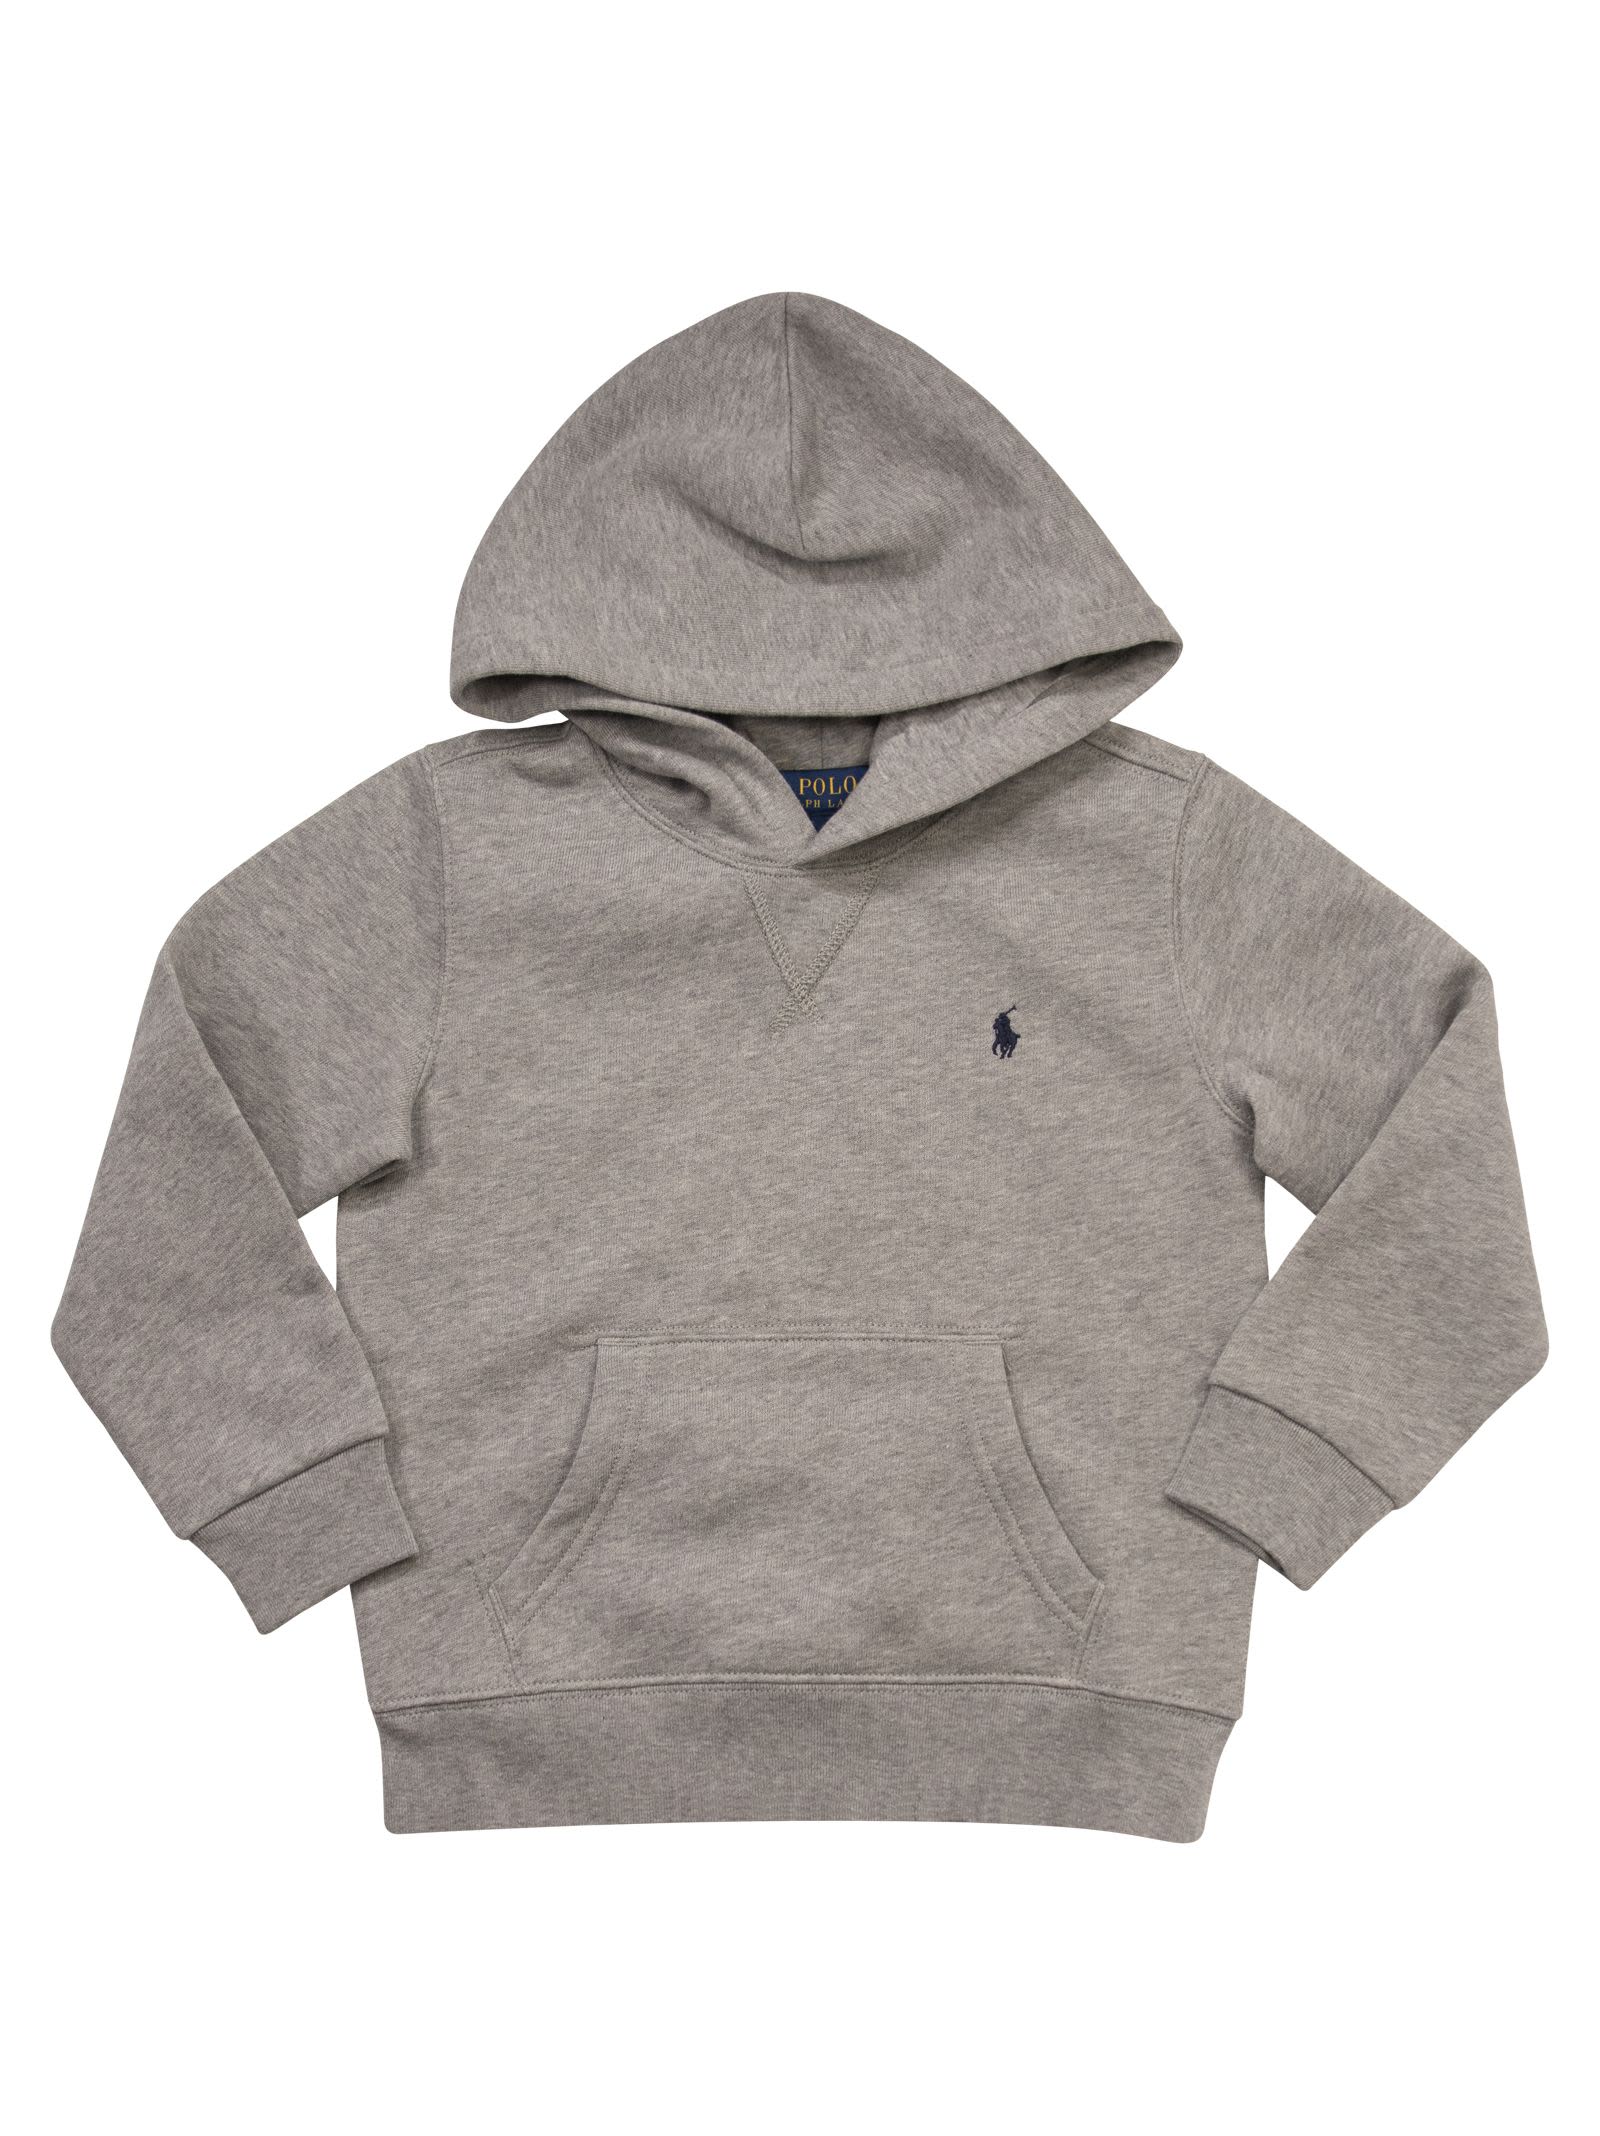 Polo Ralph Lauren Kids' Hooded Sweatshirt In Grey